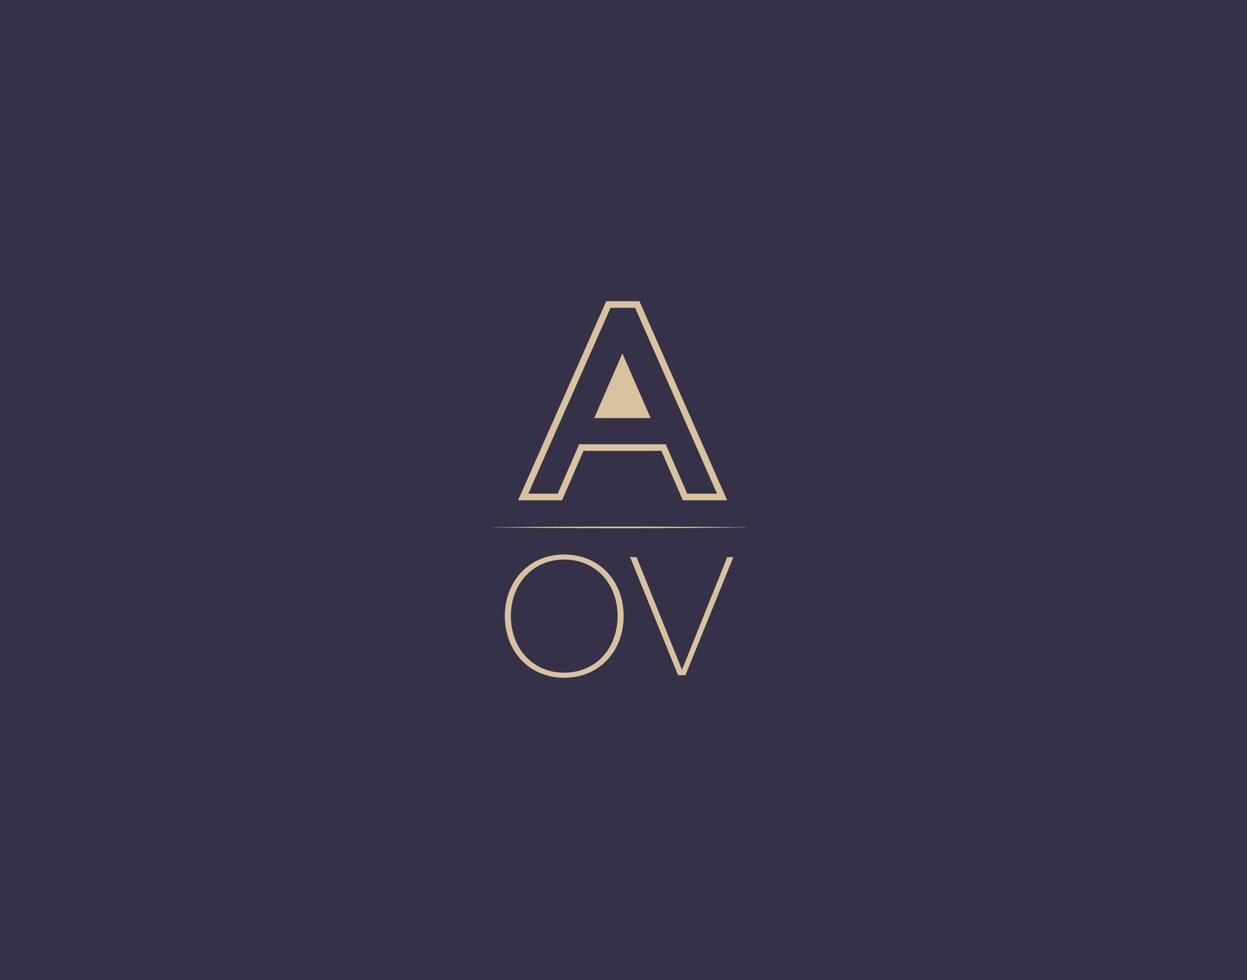 aov lettera logo design moderno minimalista vettore immagini